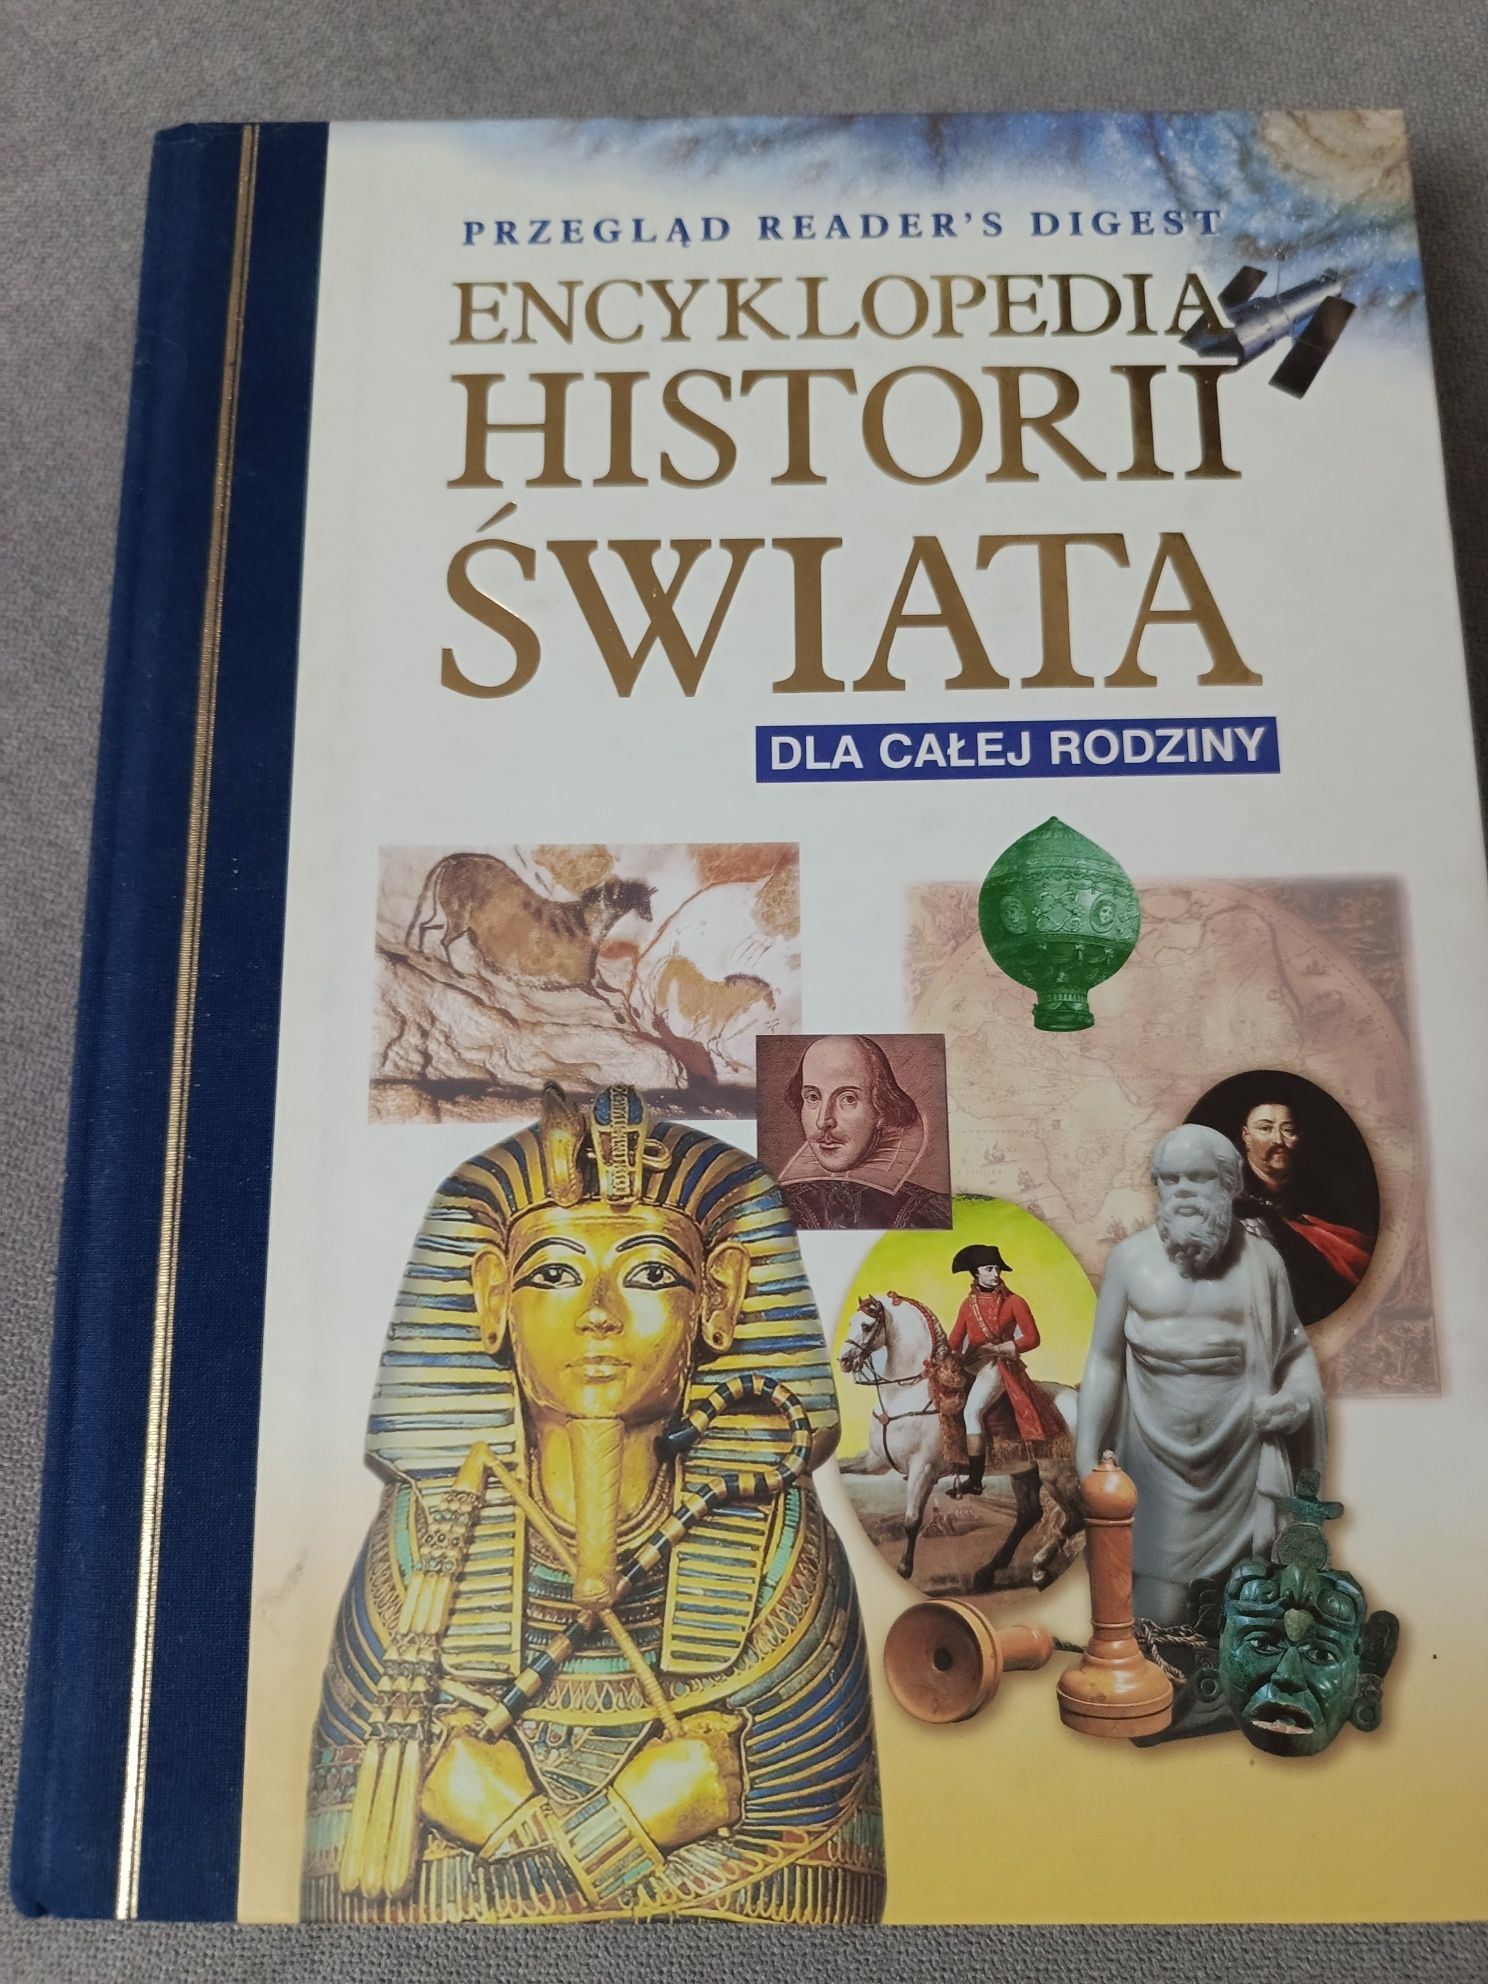 Encyklopedia Historii Świata dla całej rodziny.